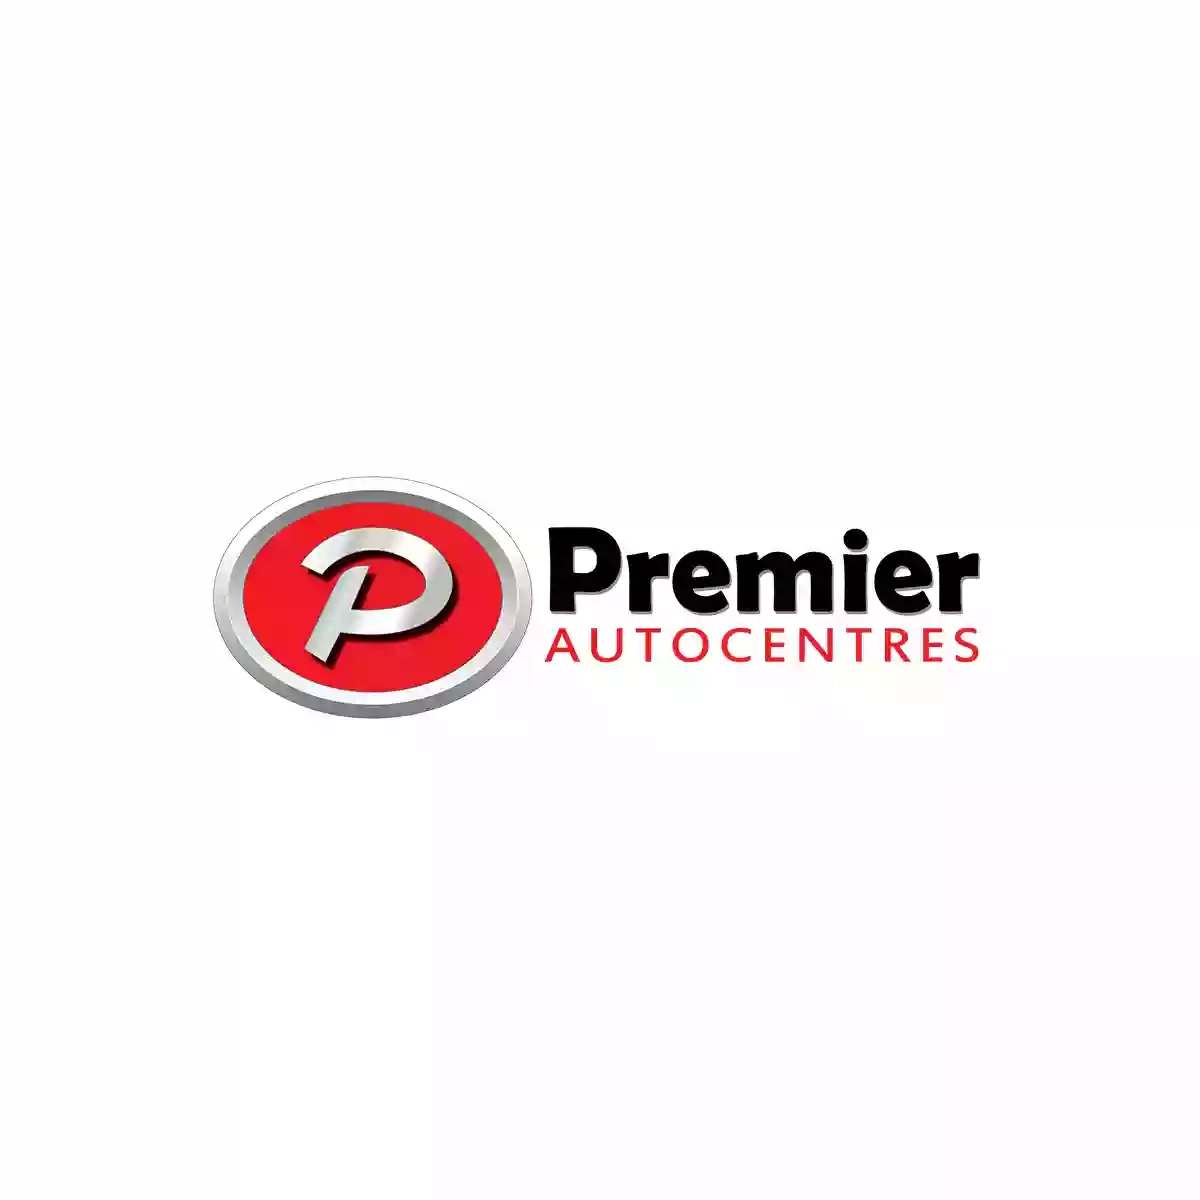 Premier Autocentres Limited - Hyundai Service